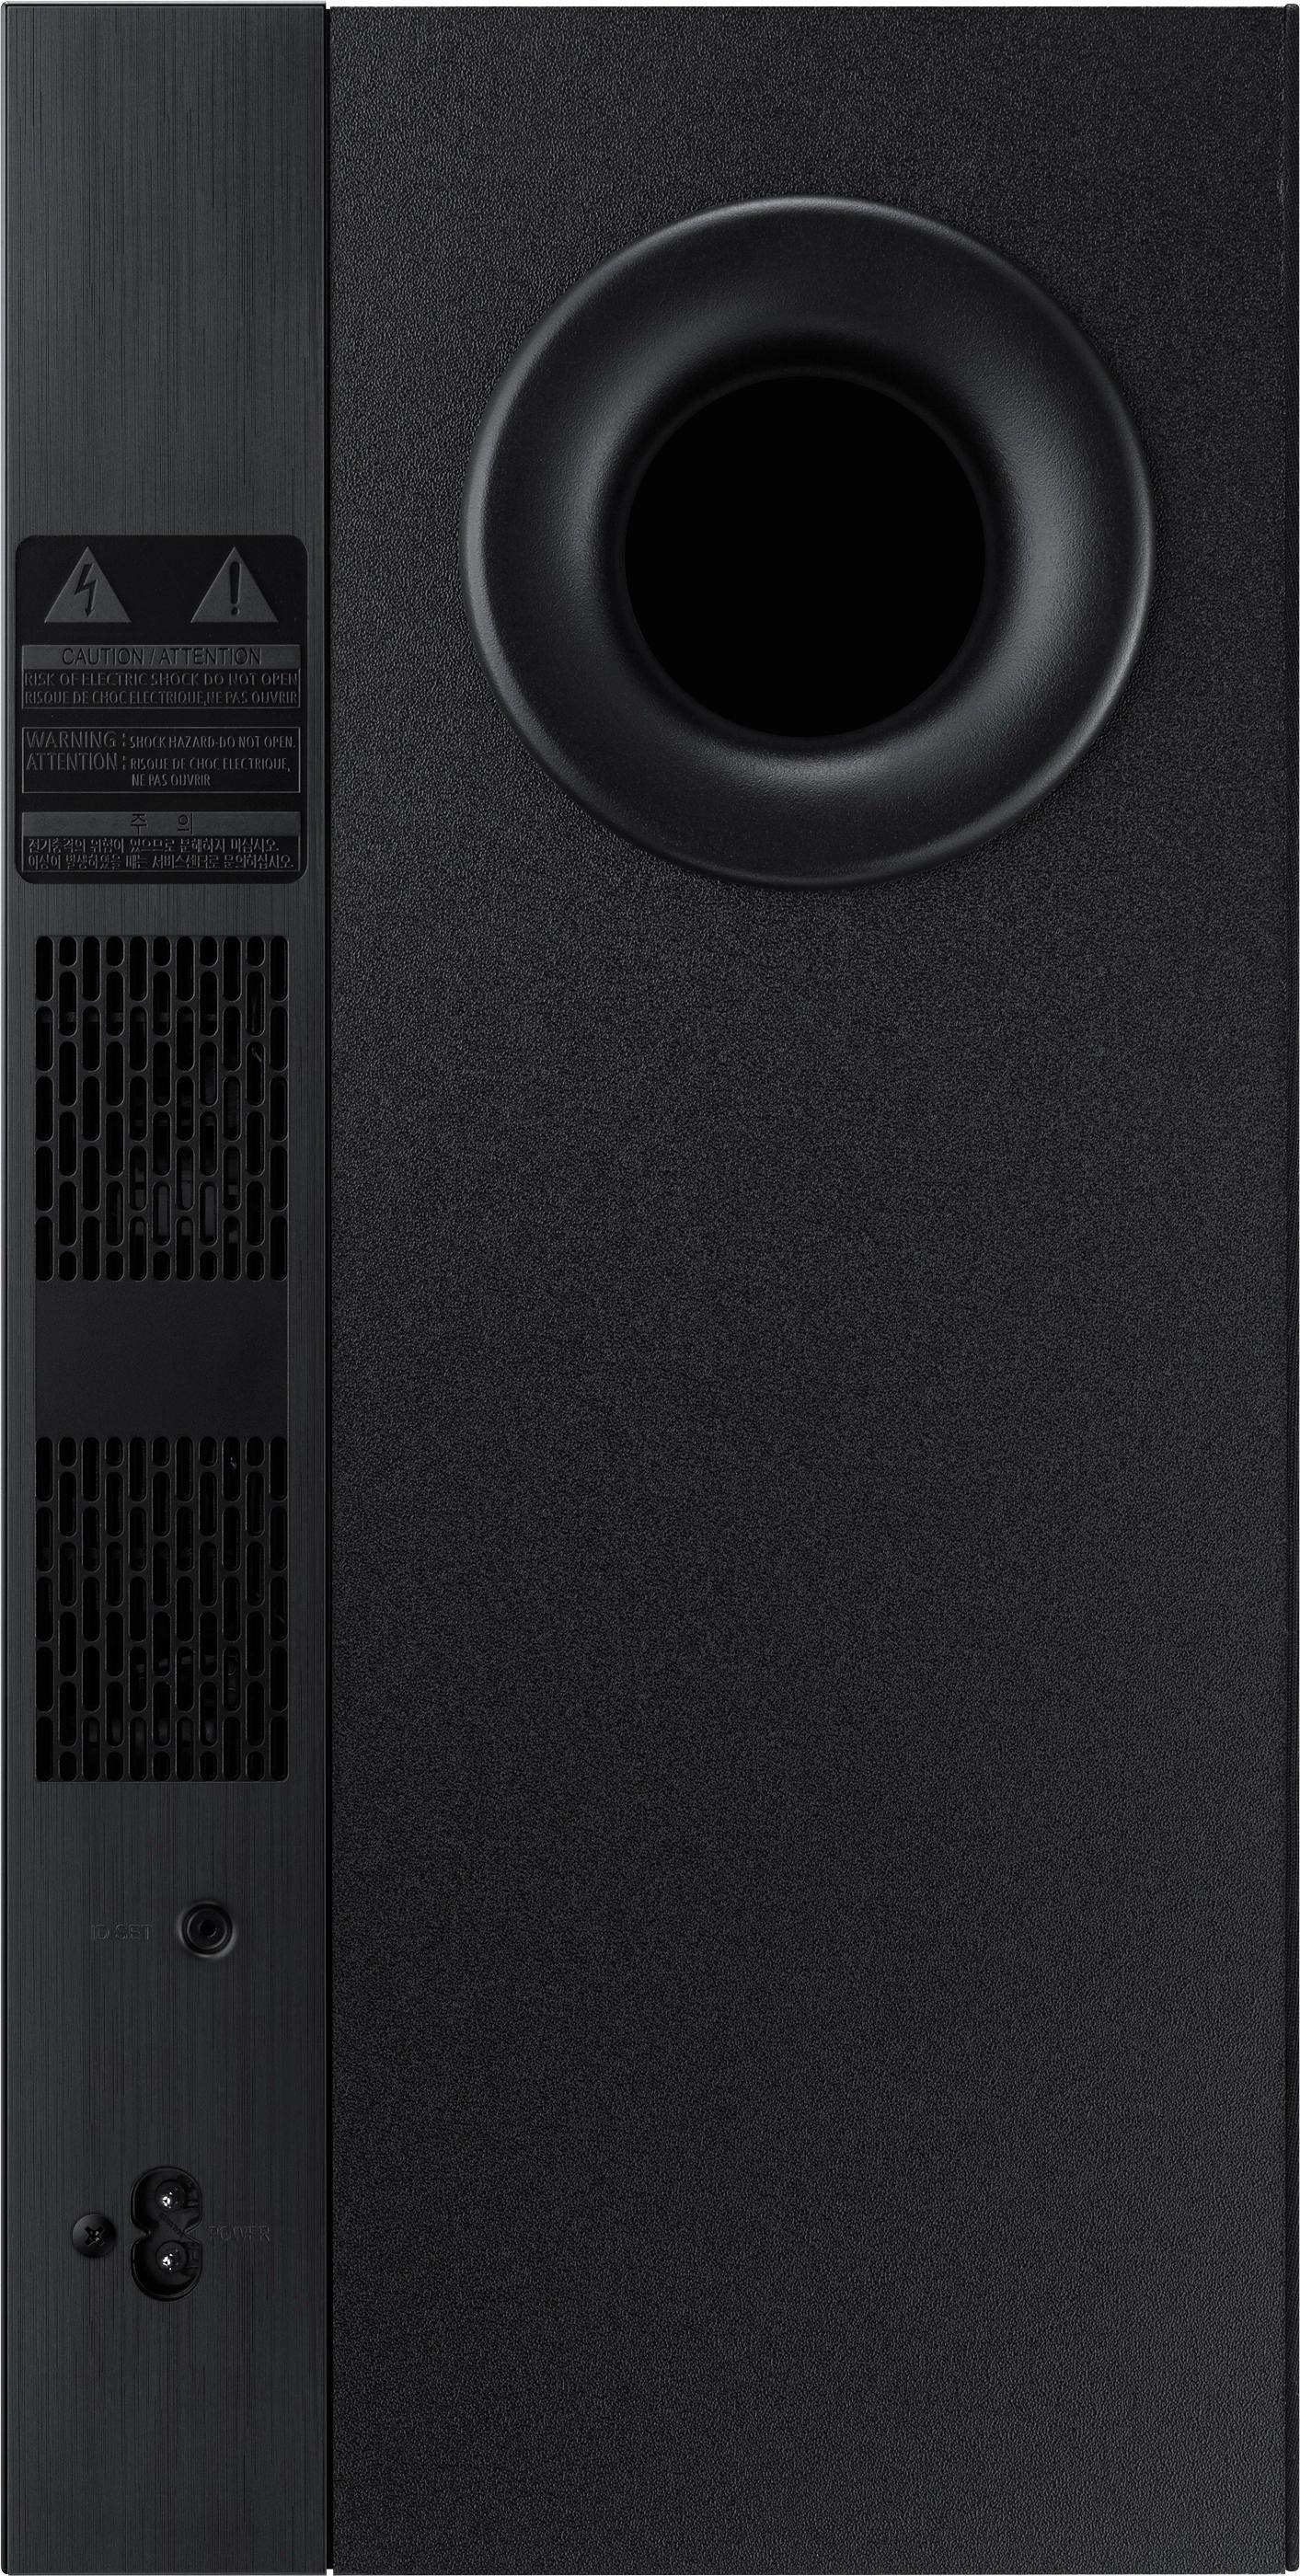 Samsung 2.1-Channel Soundbar System with 6.5" Wireless Black HW-M360/ZA